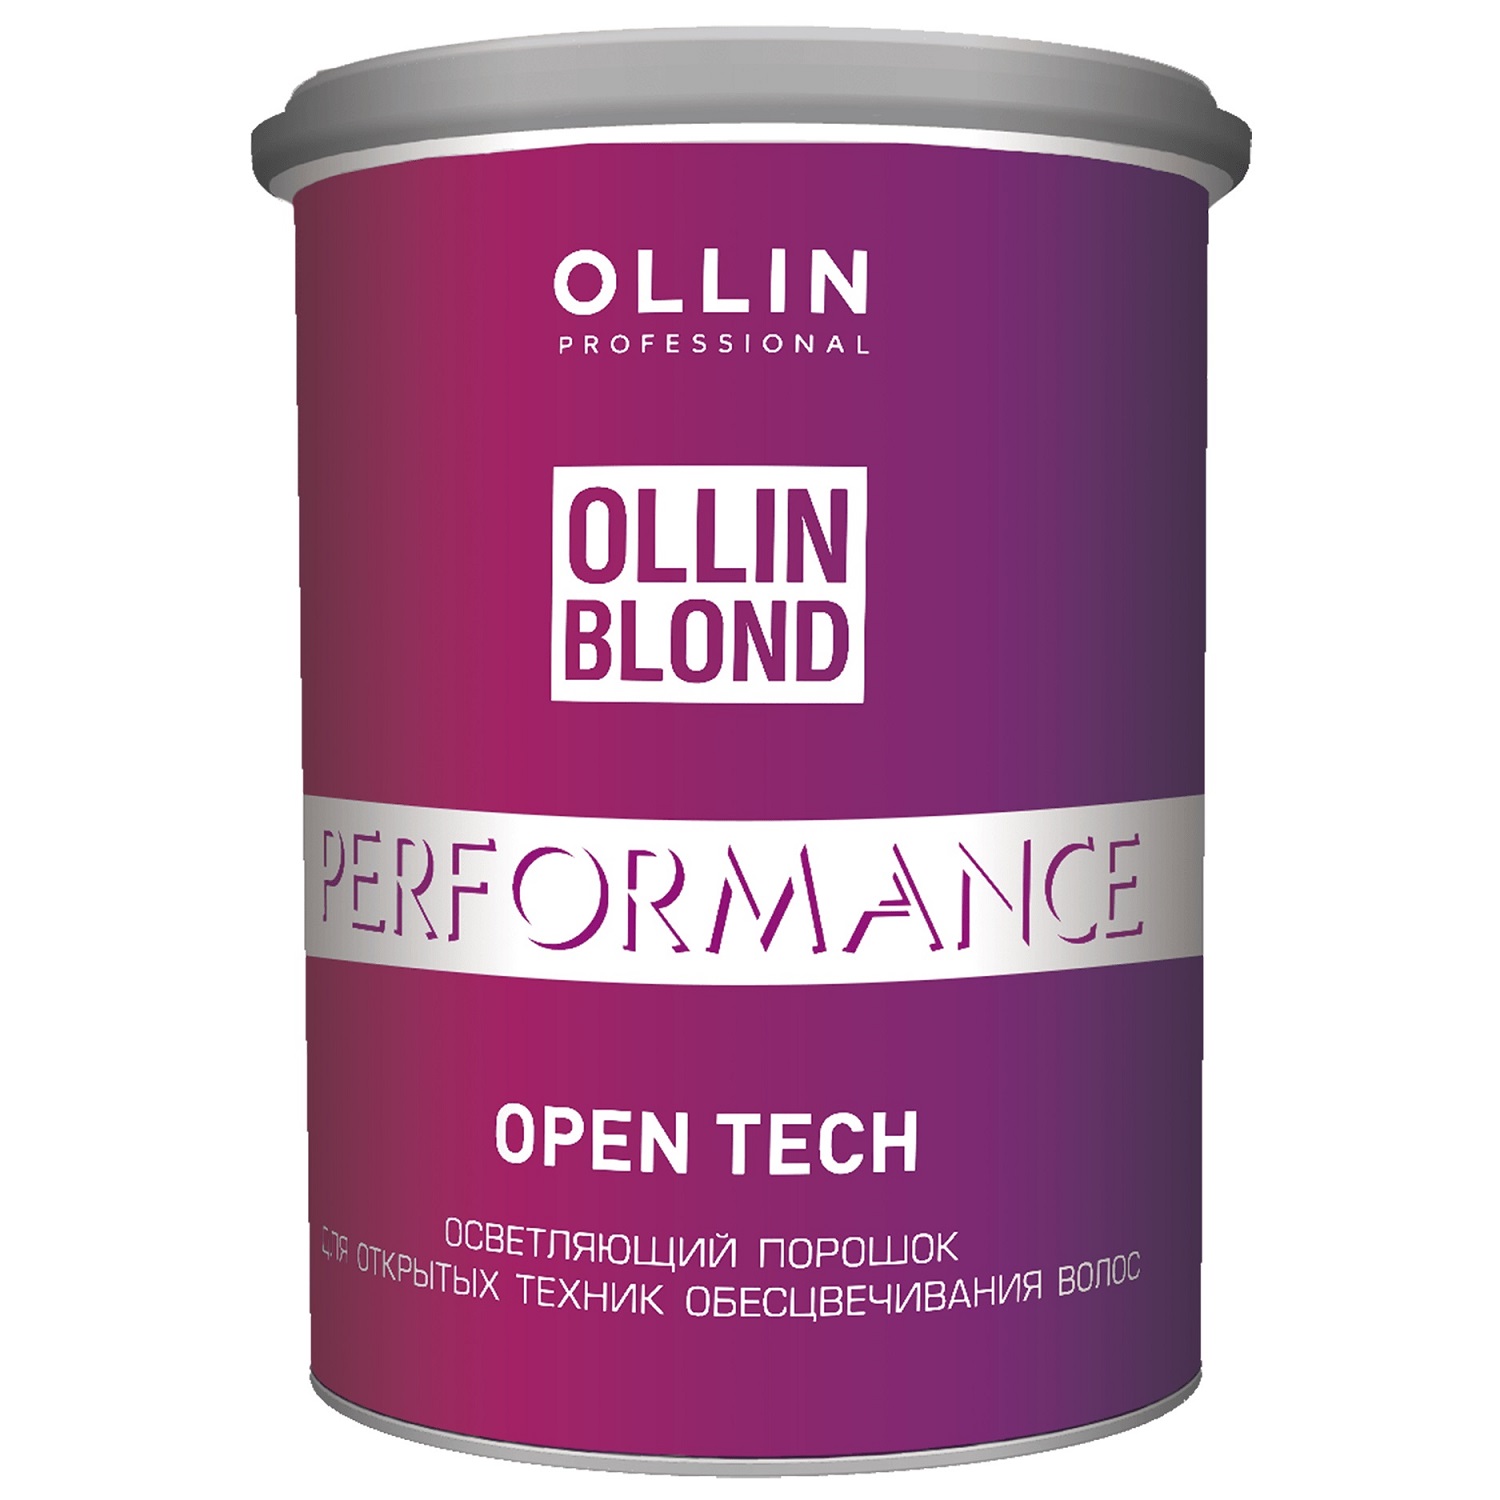 Купить Ollin Professional Осветляющий порошок Open Tech для открытых техник обесцвечивания волос, 500 г (Ollin Professional, Performance), Россия